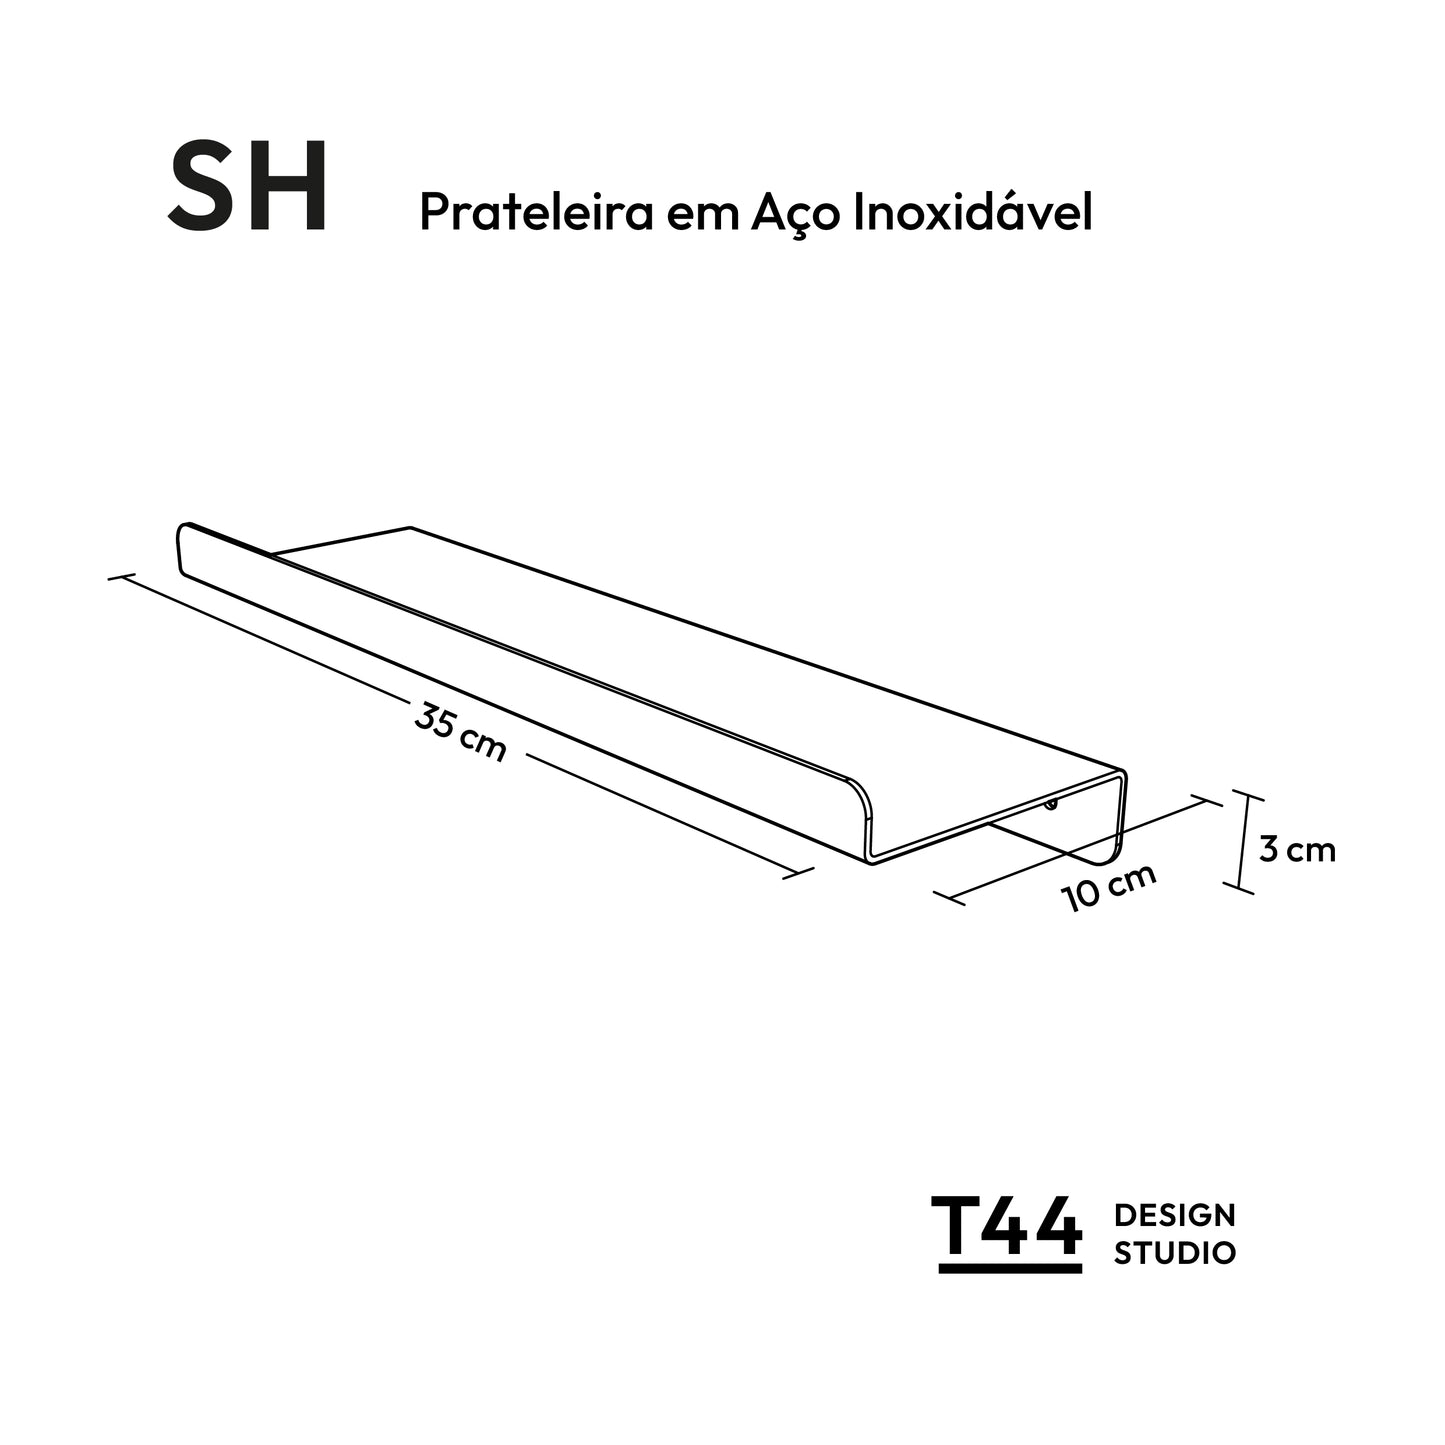 SH - Prateleira em Aço inox 35x10cm